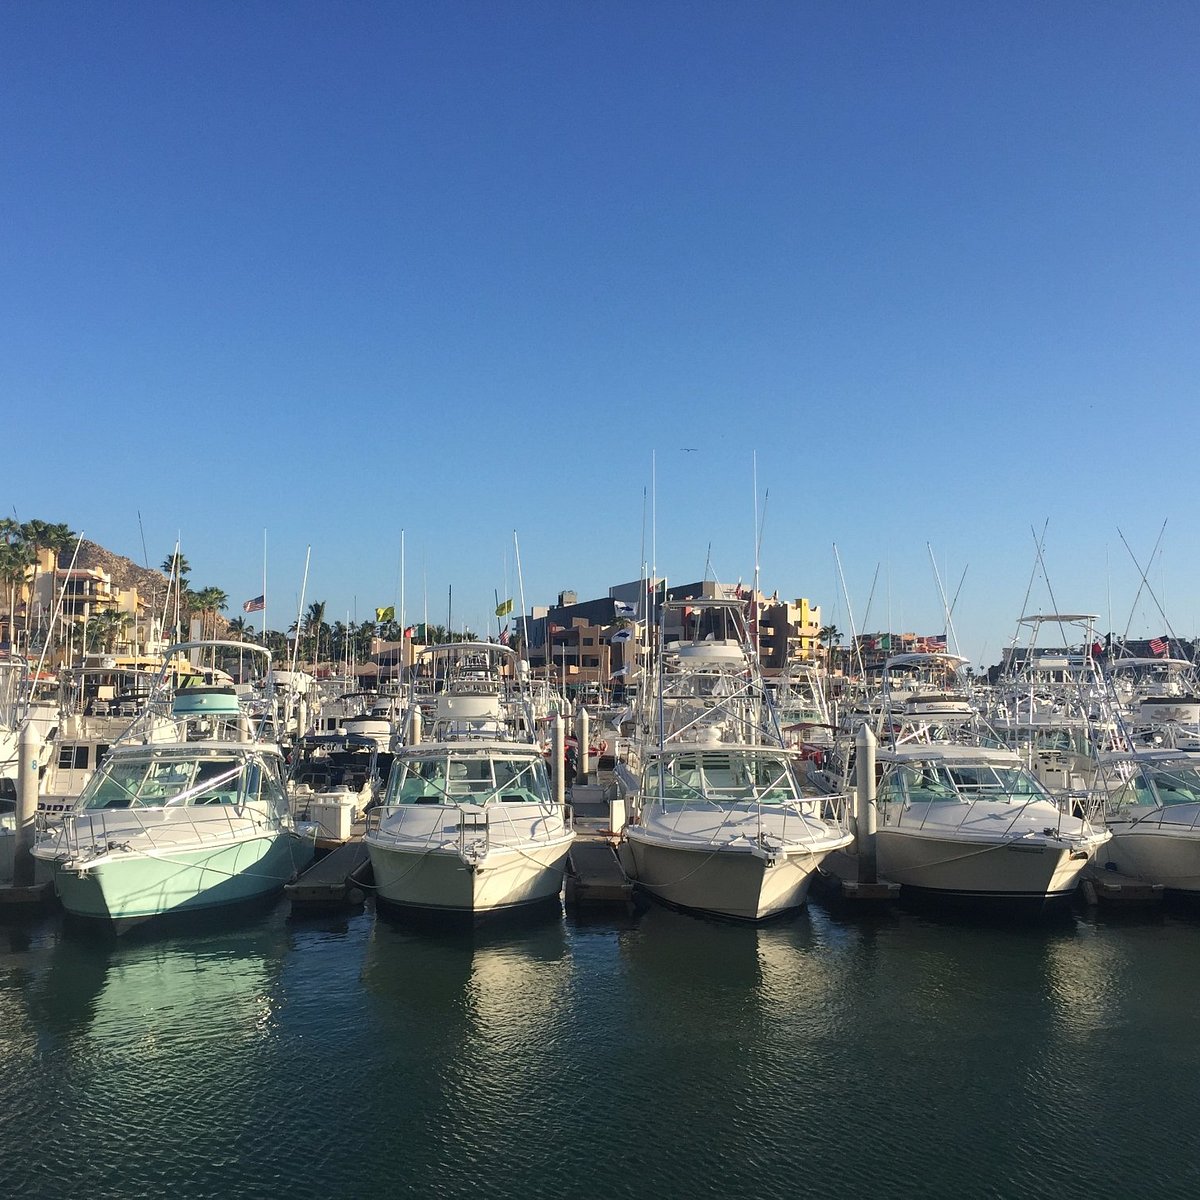 A Shopaholic's Paradise: The Marina of Puerto Banús